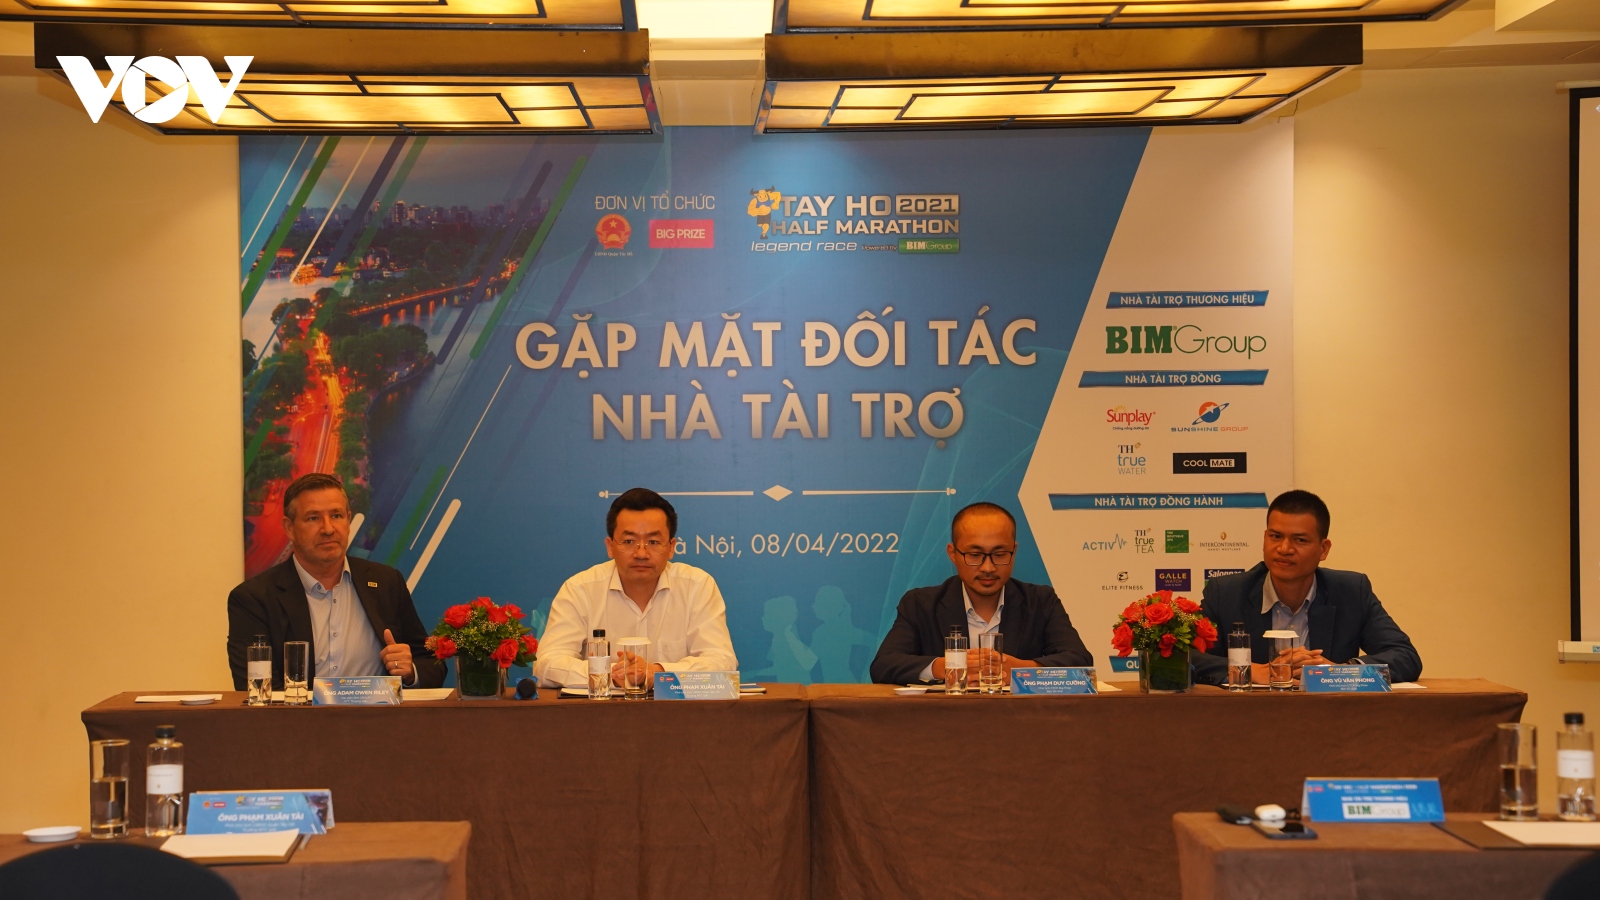 Tay Ho Half Marathon 2021 - The Legend Race chinh phục người chạy với cung đường đặc sắc